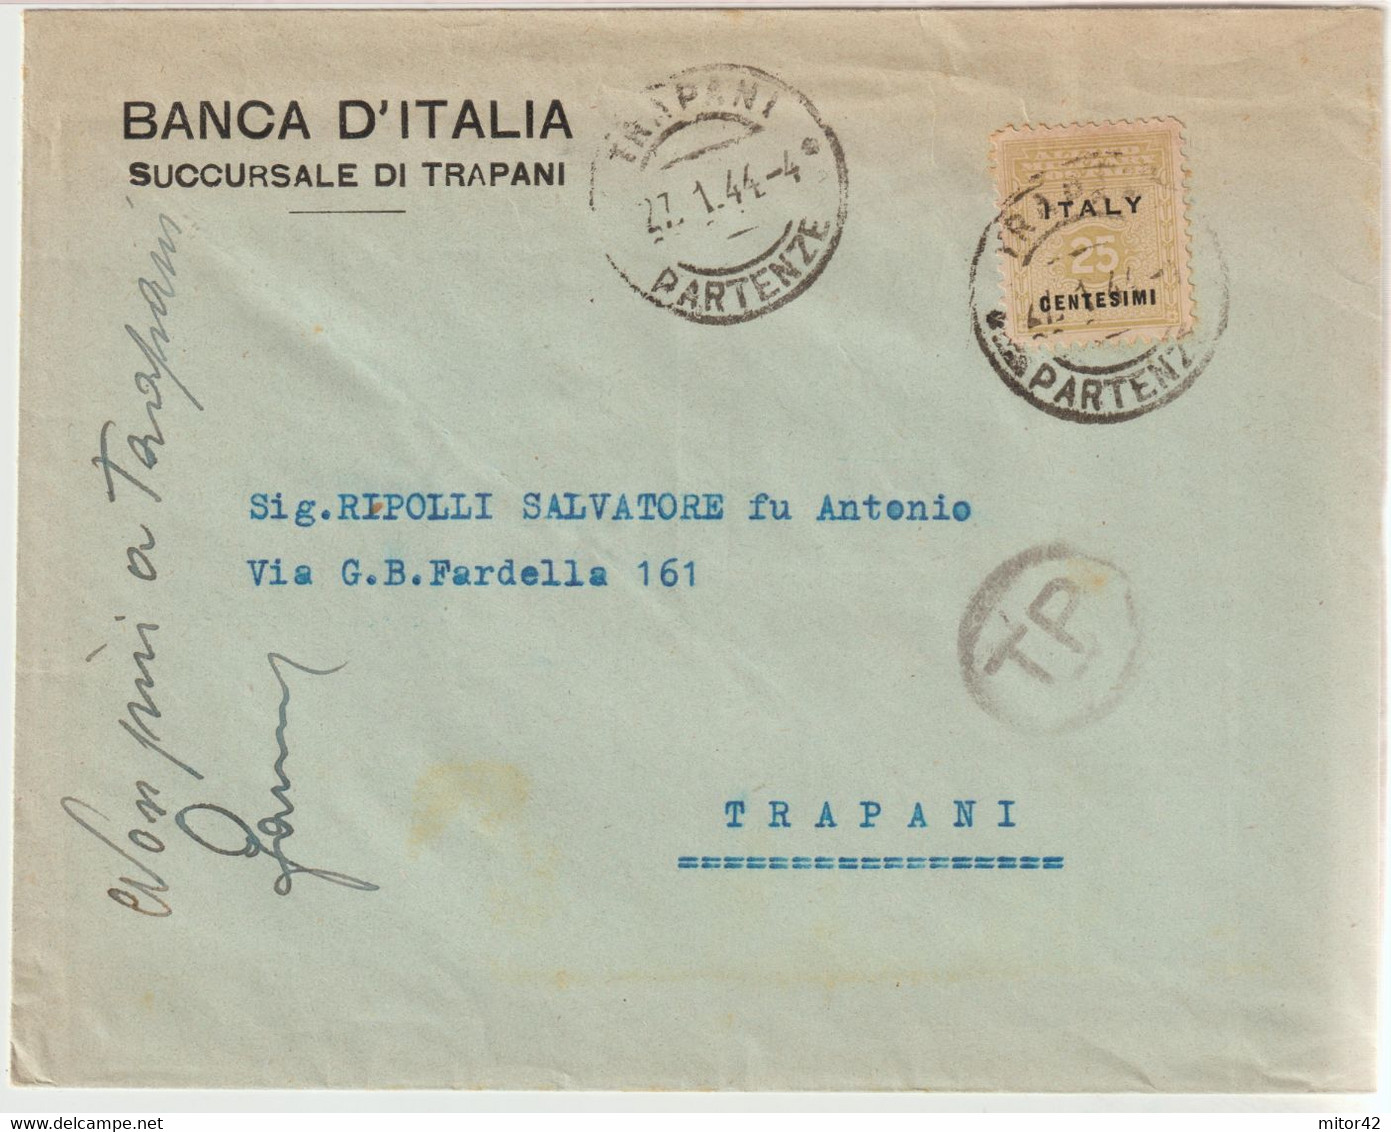 134-Amgot-Occupazione Alleata Sicilia-Busta Intestata-Banca D'Italia-Succursale Di Trapani-25c. Da E X Trapani - Occ. Anglo-américaine: Sicile